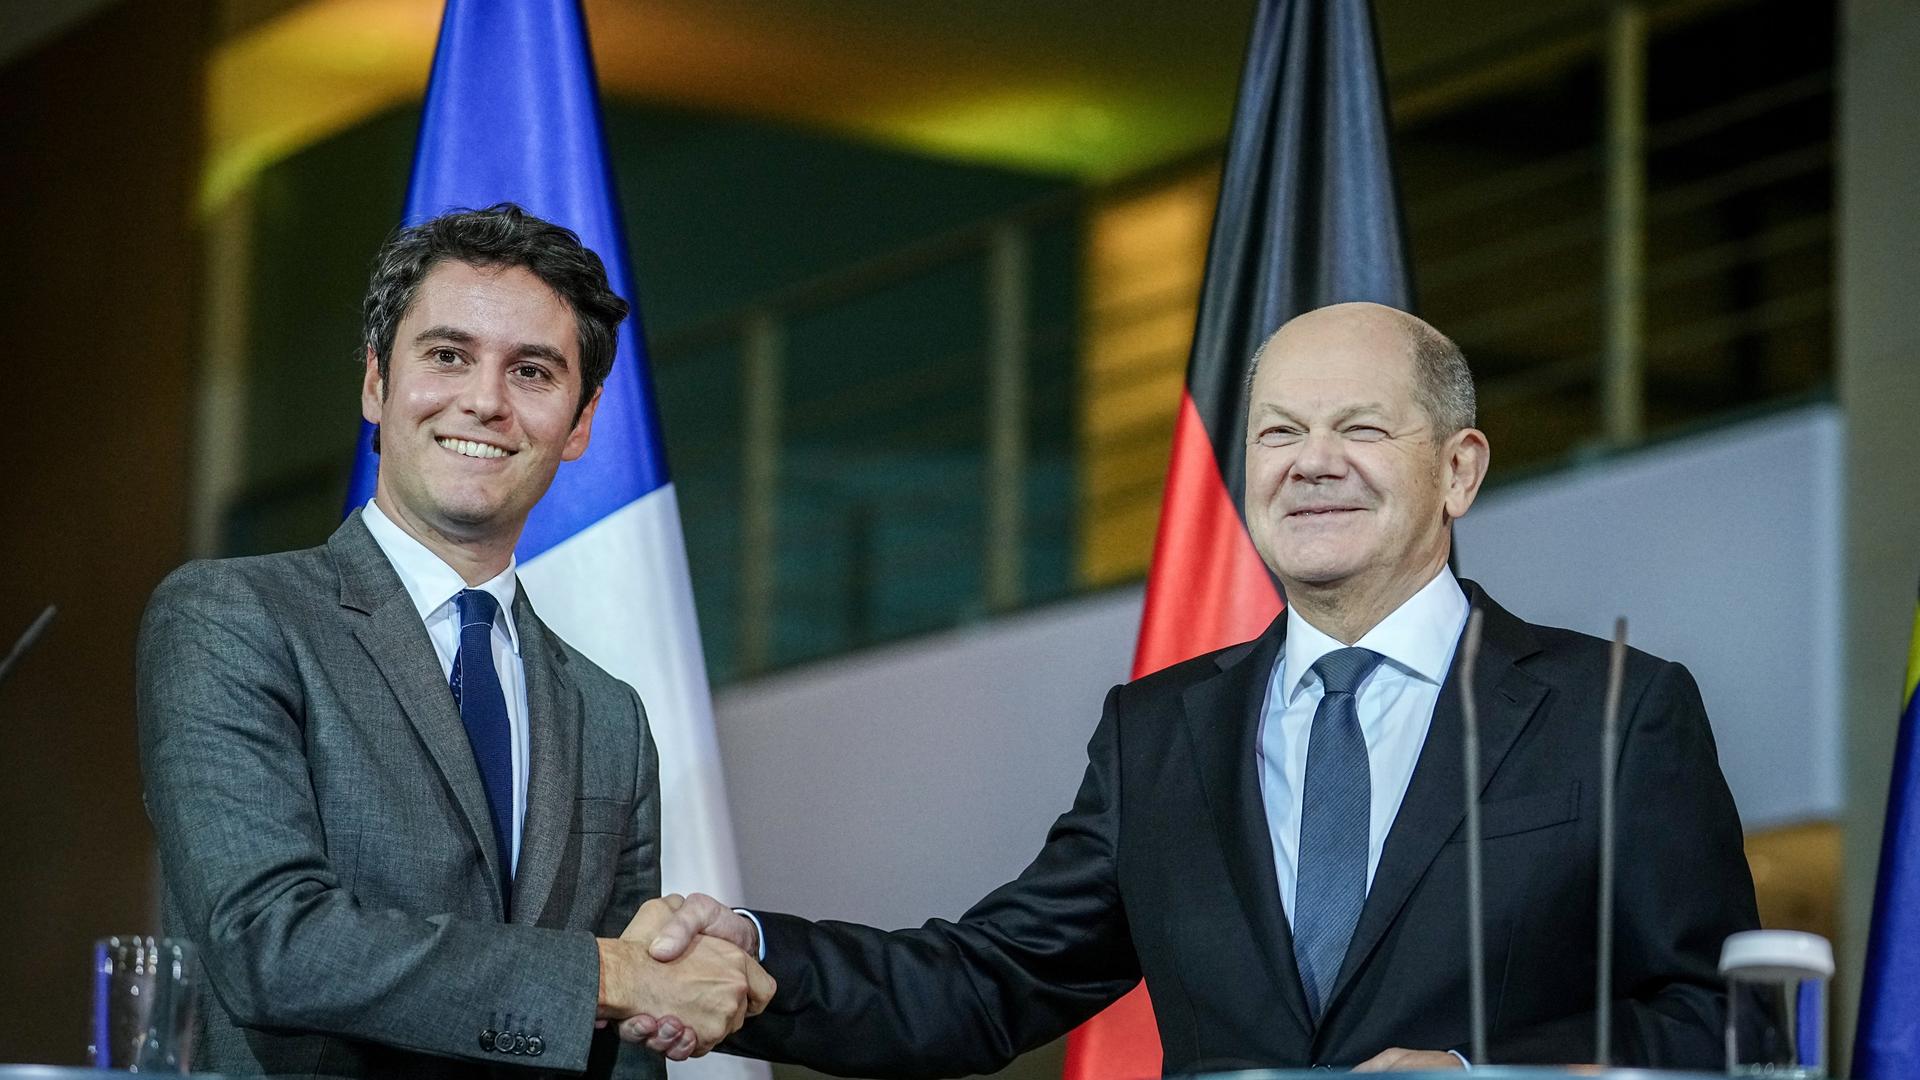 Bundeskanzler Olaf Scholz (SPD, r) und der französische Premierminister Gabriel Attal geben sich Bundeskanzleramt die Hand. Im Hintergrund ist die franzöische und die deutsche Fahne zu sehen. 